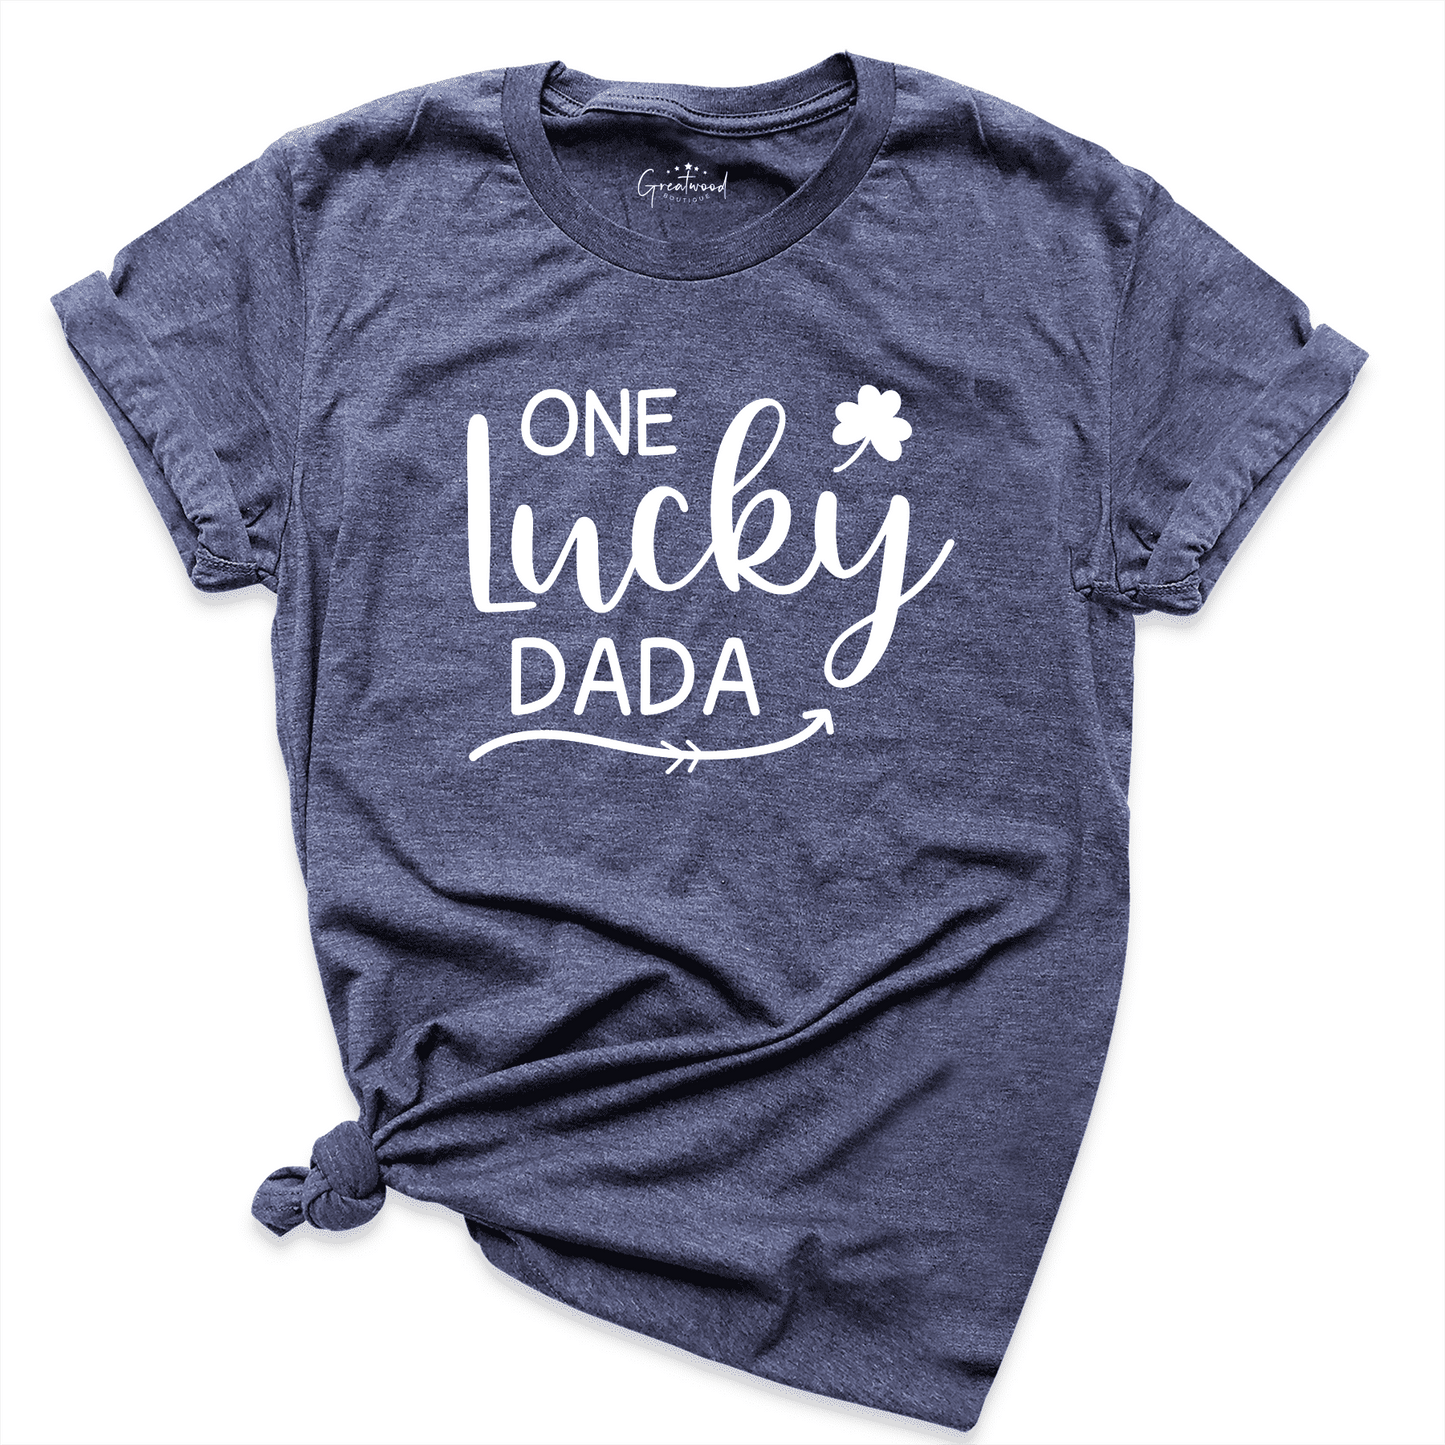 One Lucky Dada Shirt